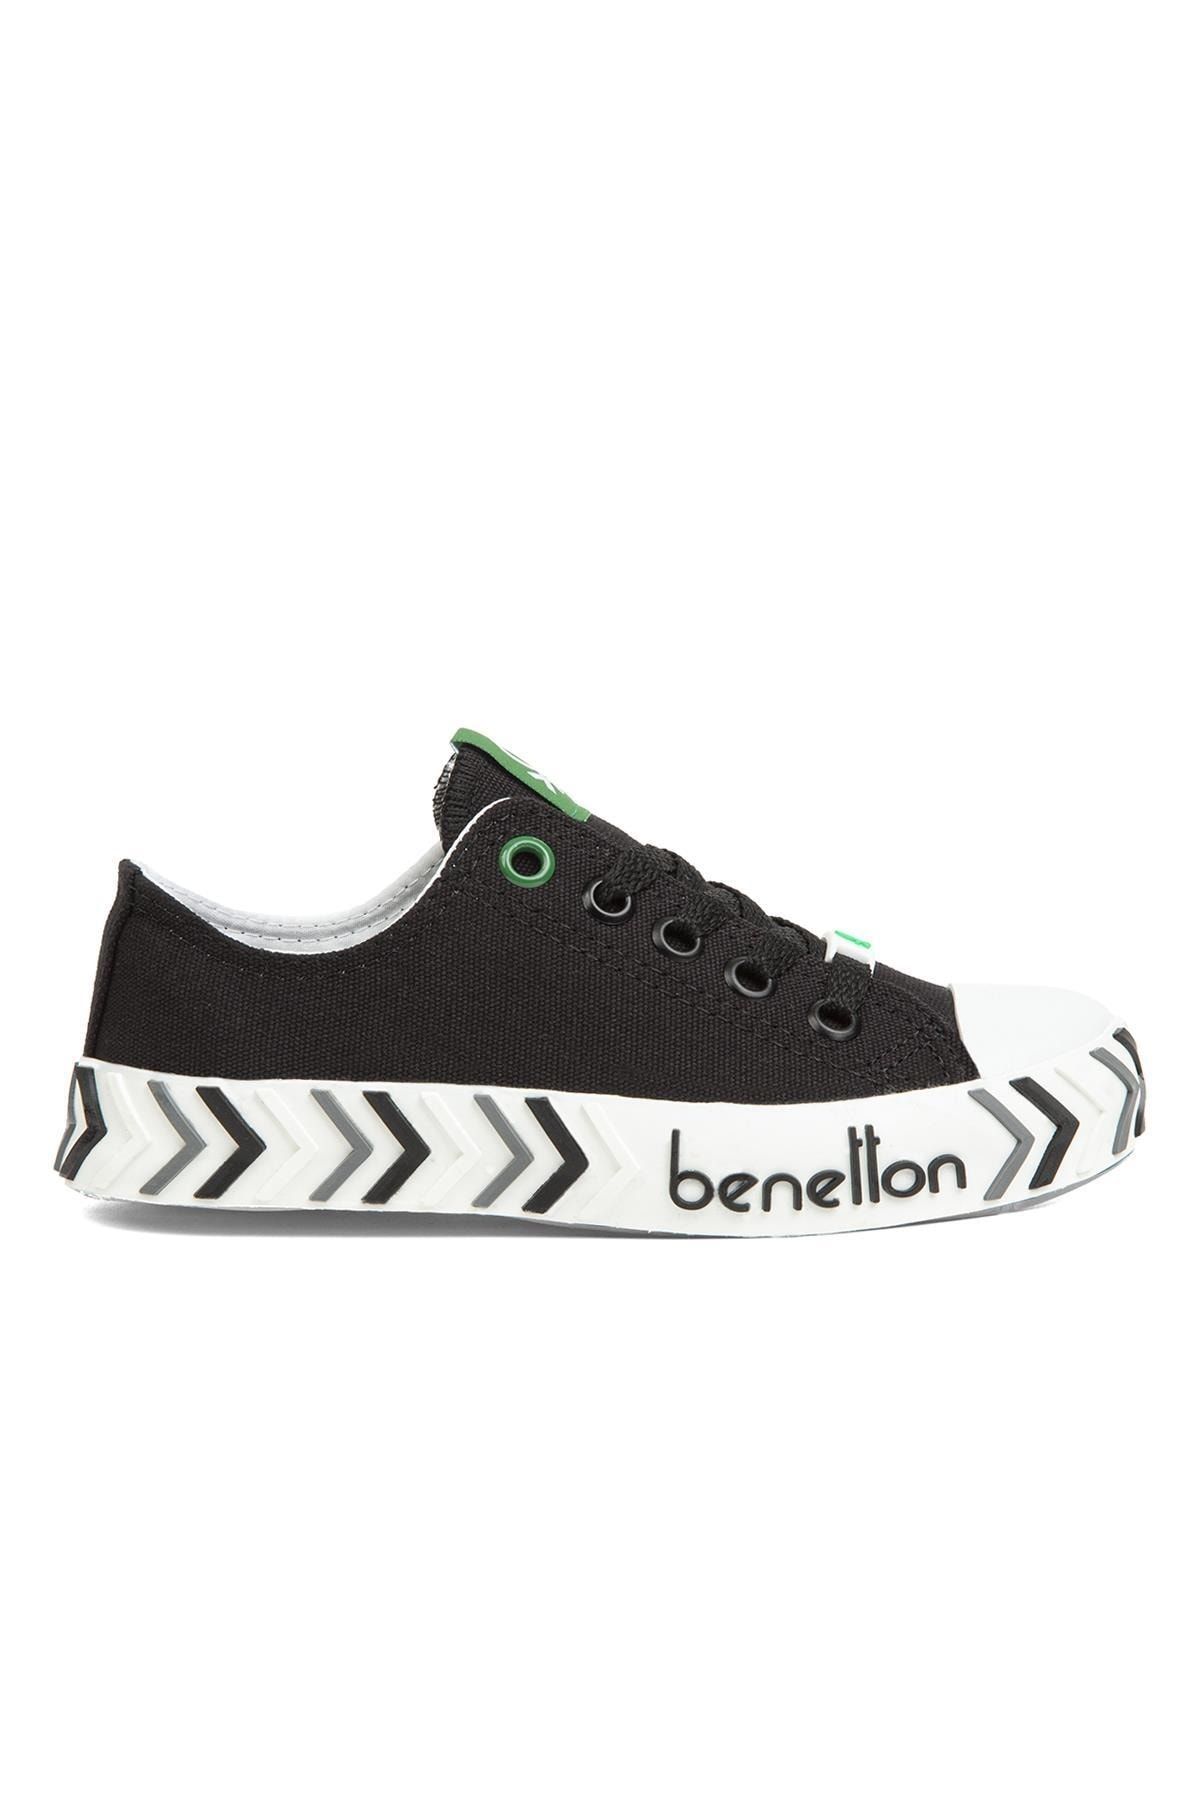 Benetton ® | Bn-30635-3374 Siyah - Çocuk Spor Ayakkabı